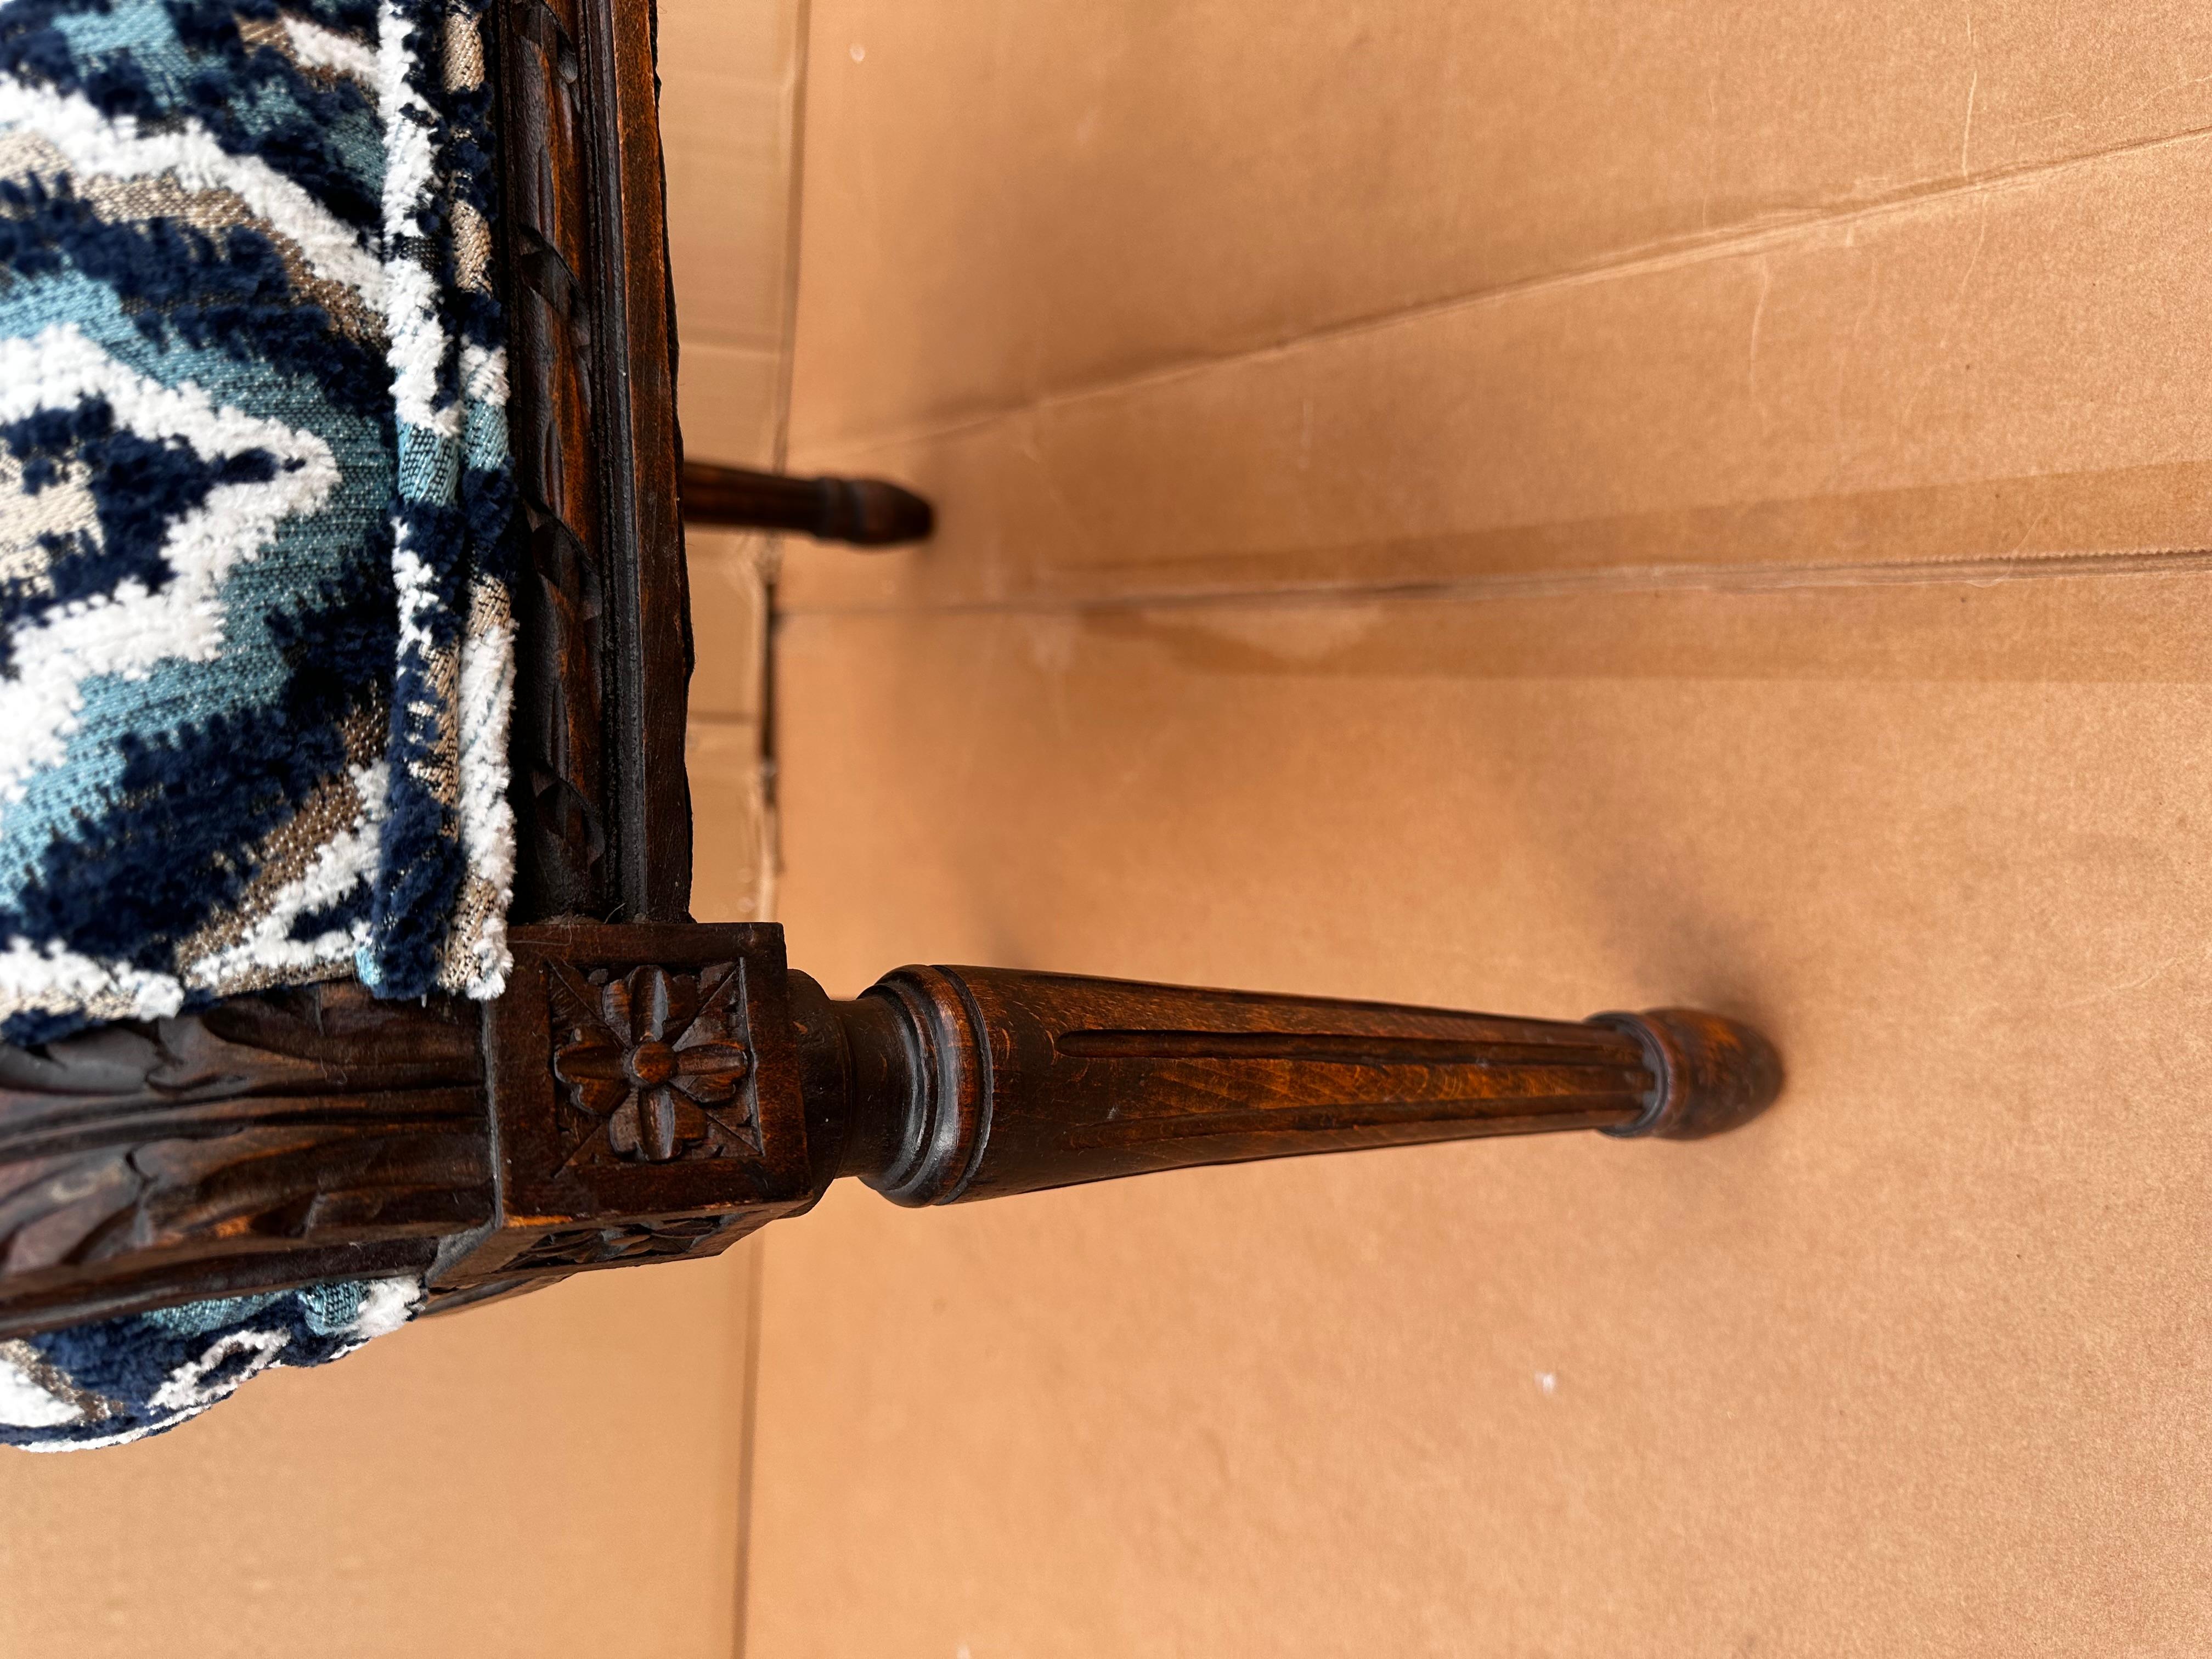 Dieser französische Stuhl ist absolut umwerfend! Der antike Rahmen ist aus dunkelbraunem Holz mit handgeschnitzten Details an den Kanten und oben. Er wurde neu gepolstert und mit einem wunderschönen tiefblauen und weißen Stoff mit oliv- und